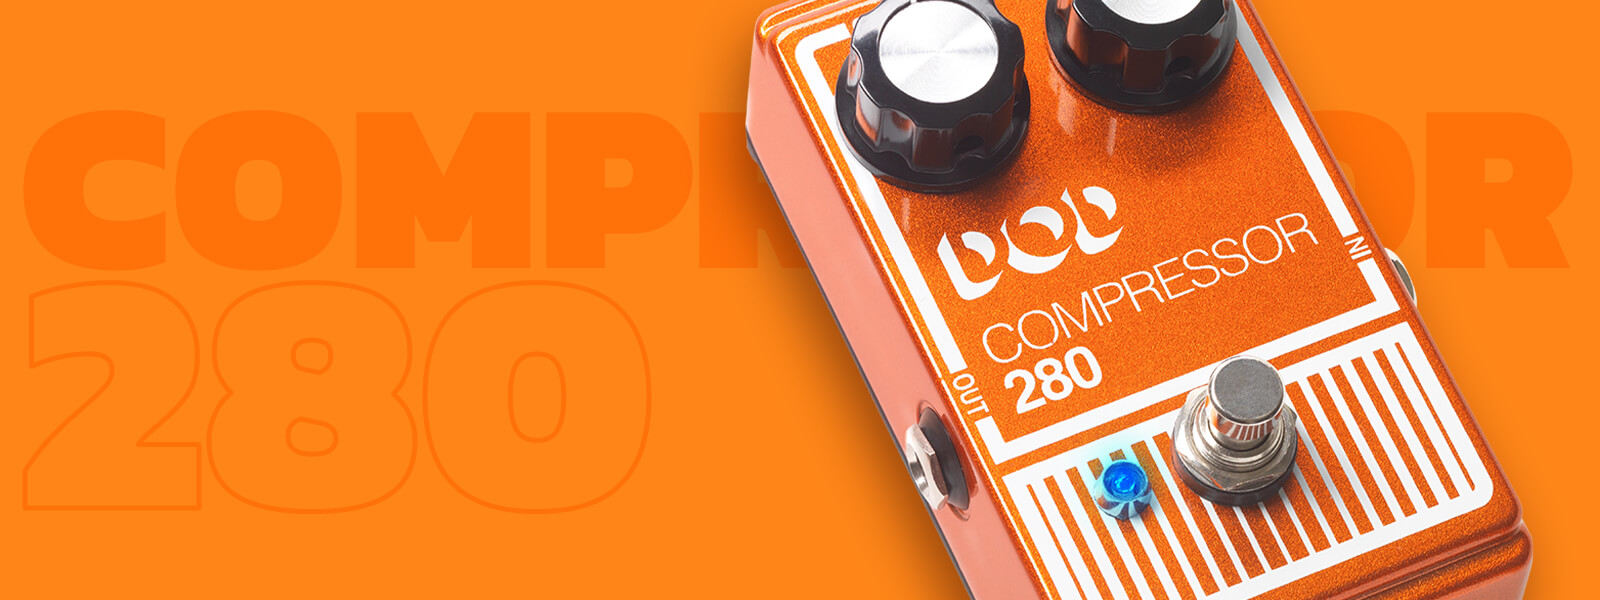 DOD Compressor 280 guitar pedal on matching orange background